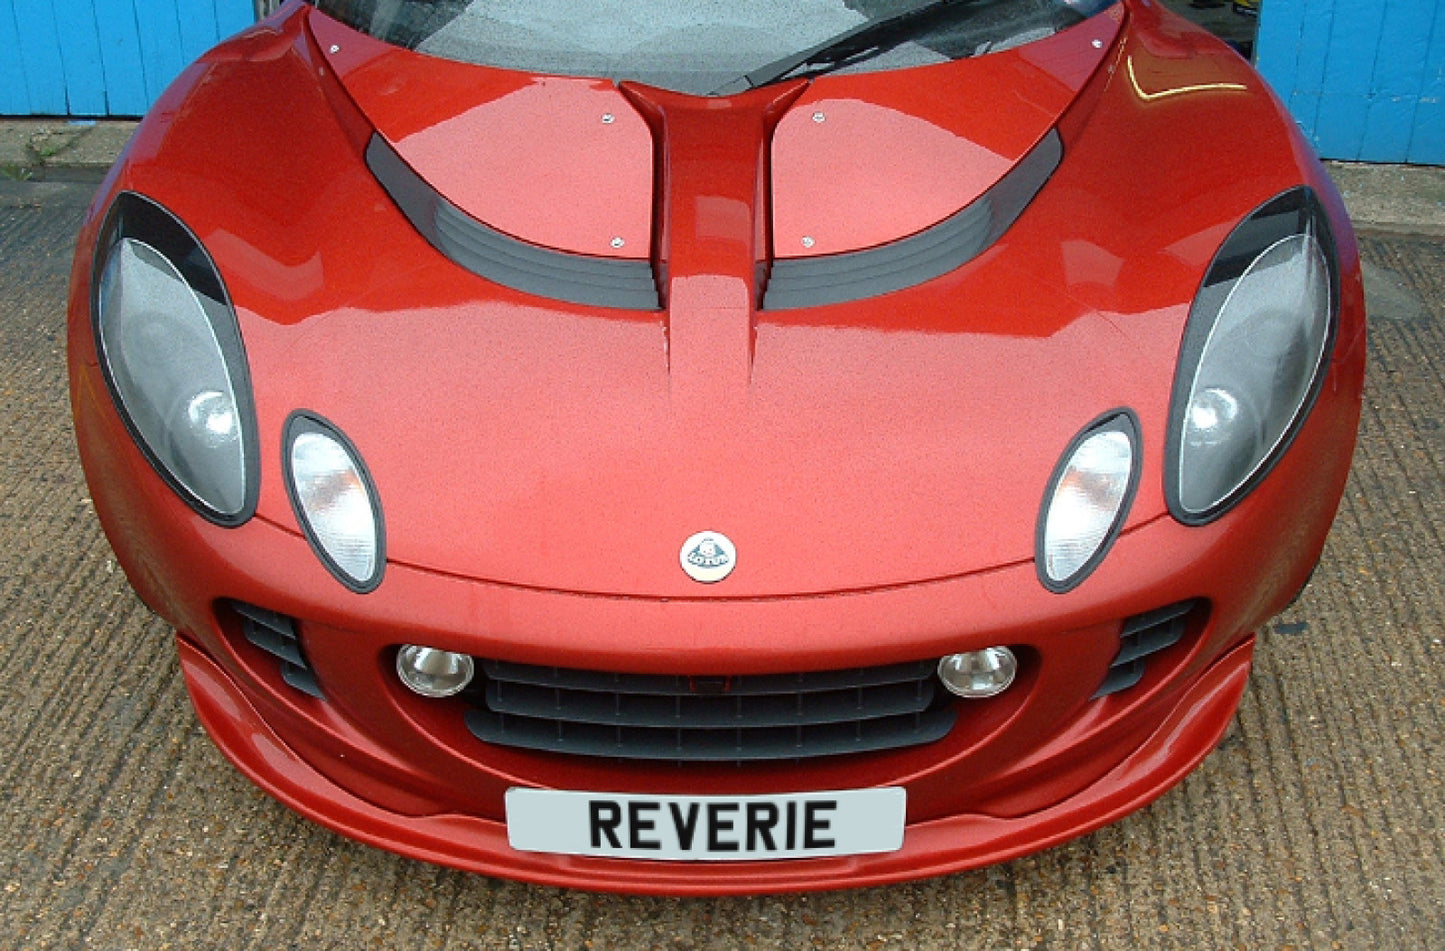 Reverie Lotus Elise S2 (01 - 11) Carbon Fiber Front Spoiler - Non-Splitter Plate Version REV-R01SB0101